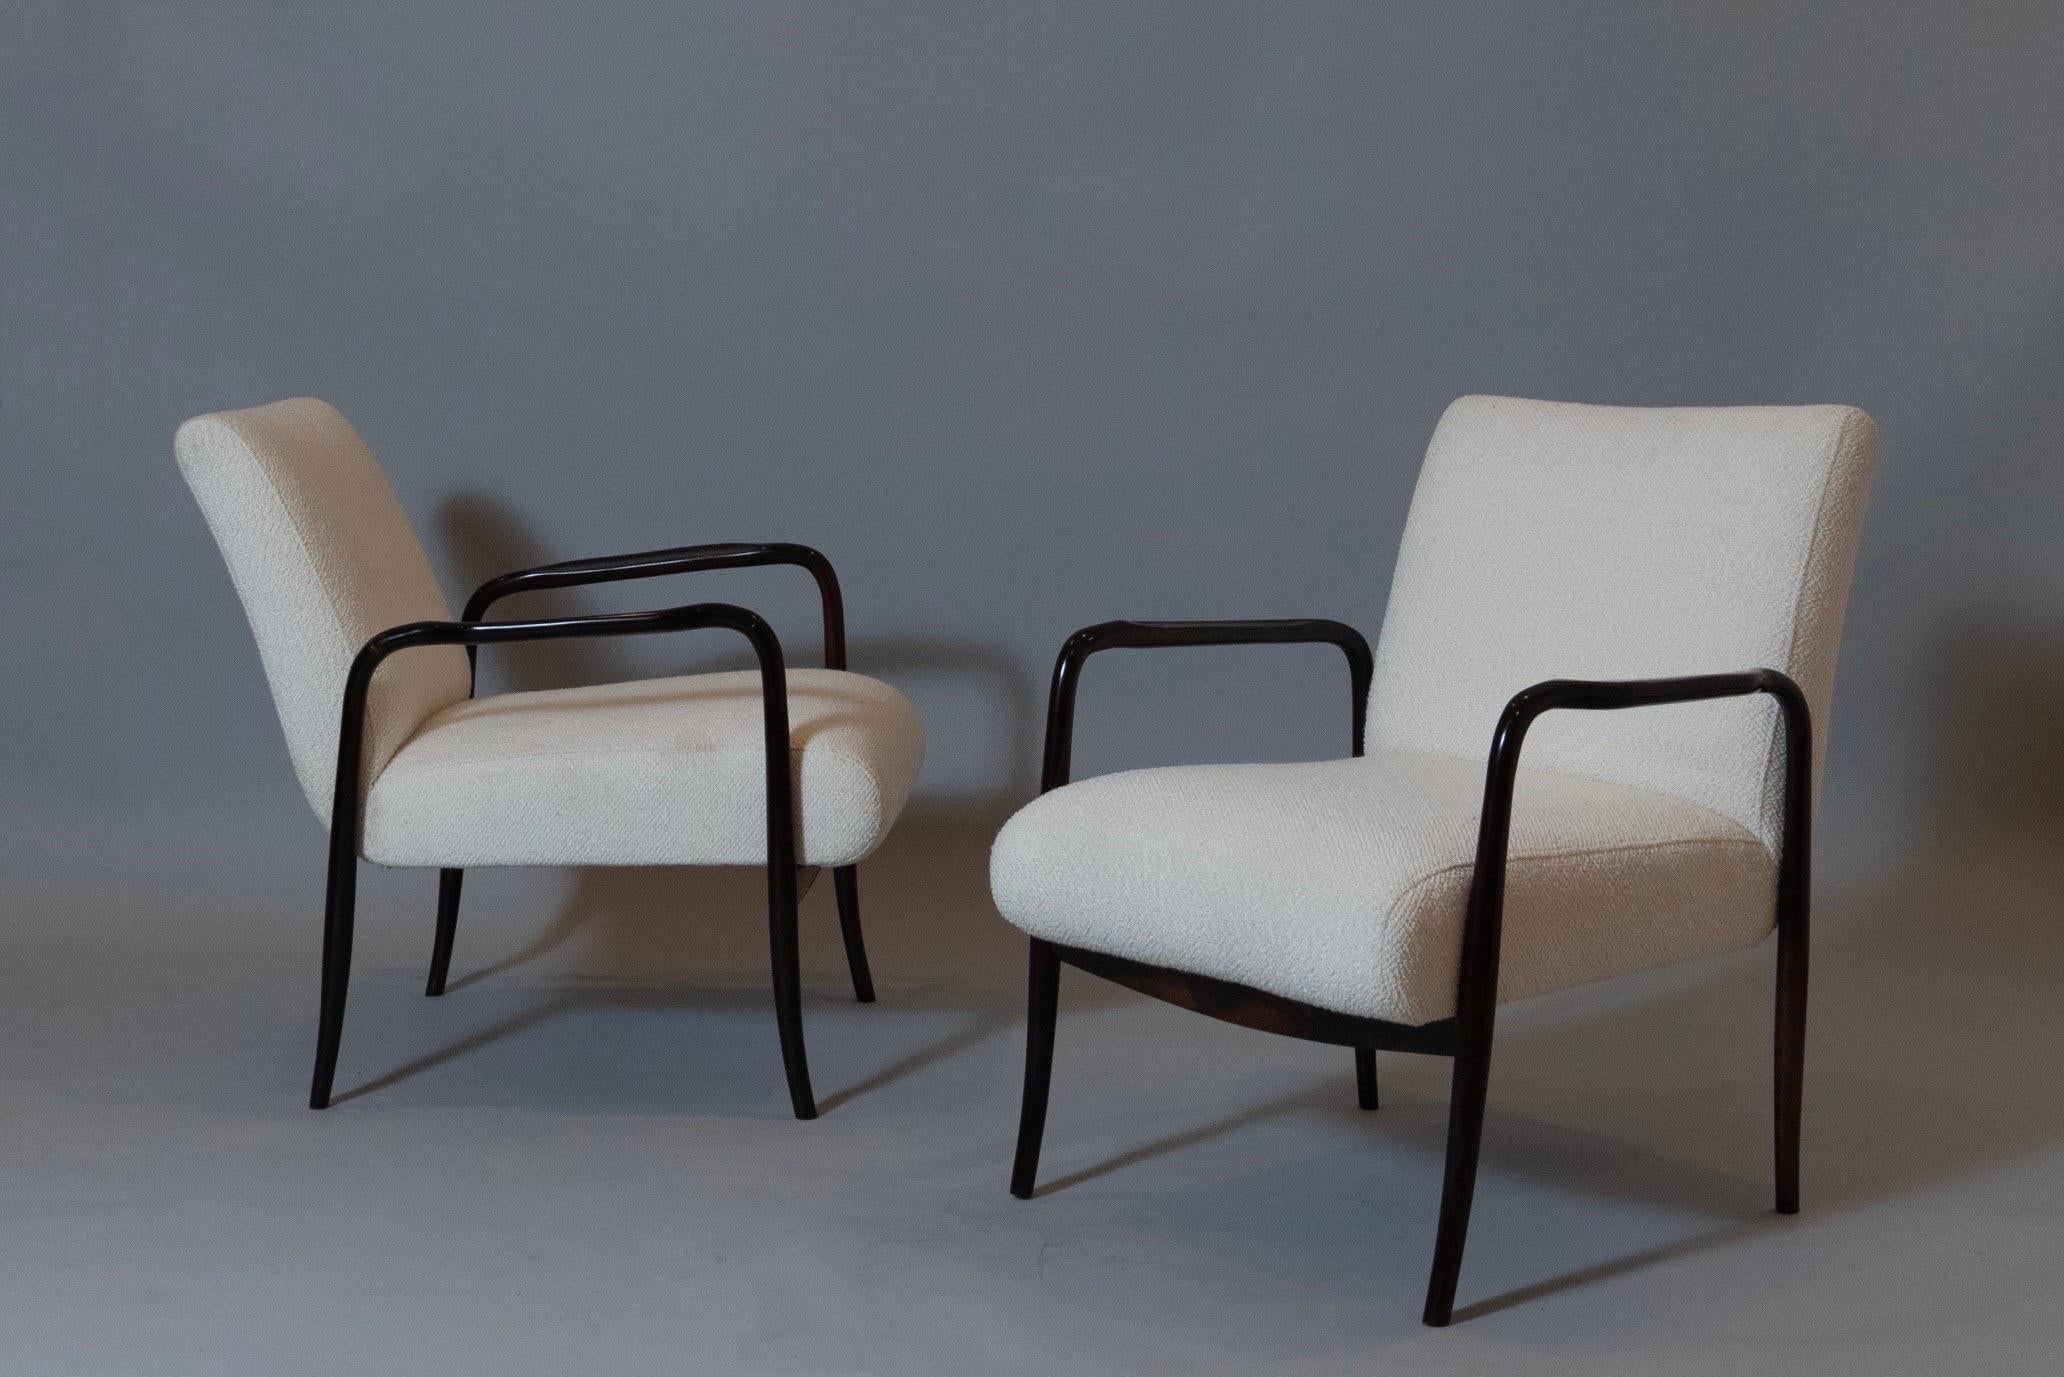 Joaquim Tenreiro (1906 - 1992) 

Ein atemberaubendes Paar Sessel von außergewöhnlicher Leichtigkeit und Eleganz aus Jacaranda vom Pionier des brasilianischen Modernismus Joaquim Tenreiro. Mit ihrem schlanken Profil und den wunderschön geschnitzten,